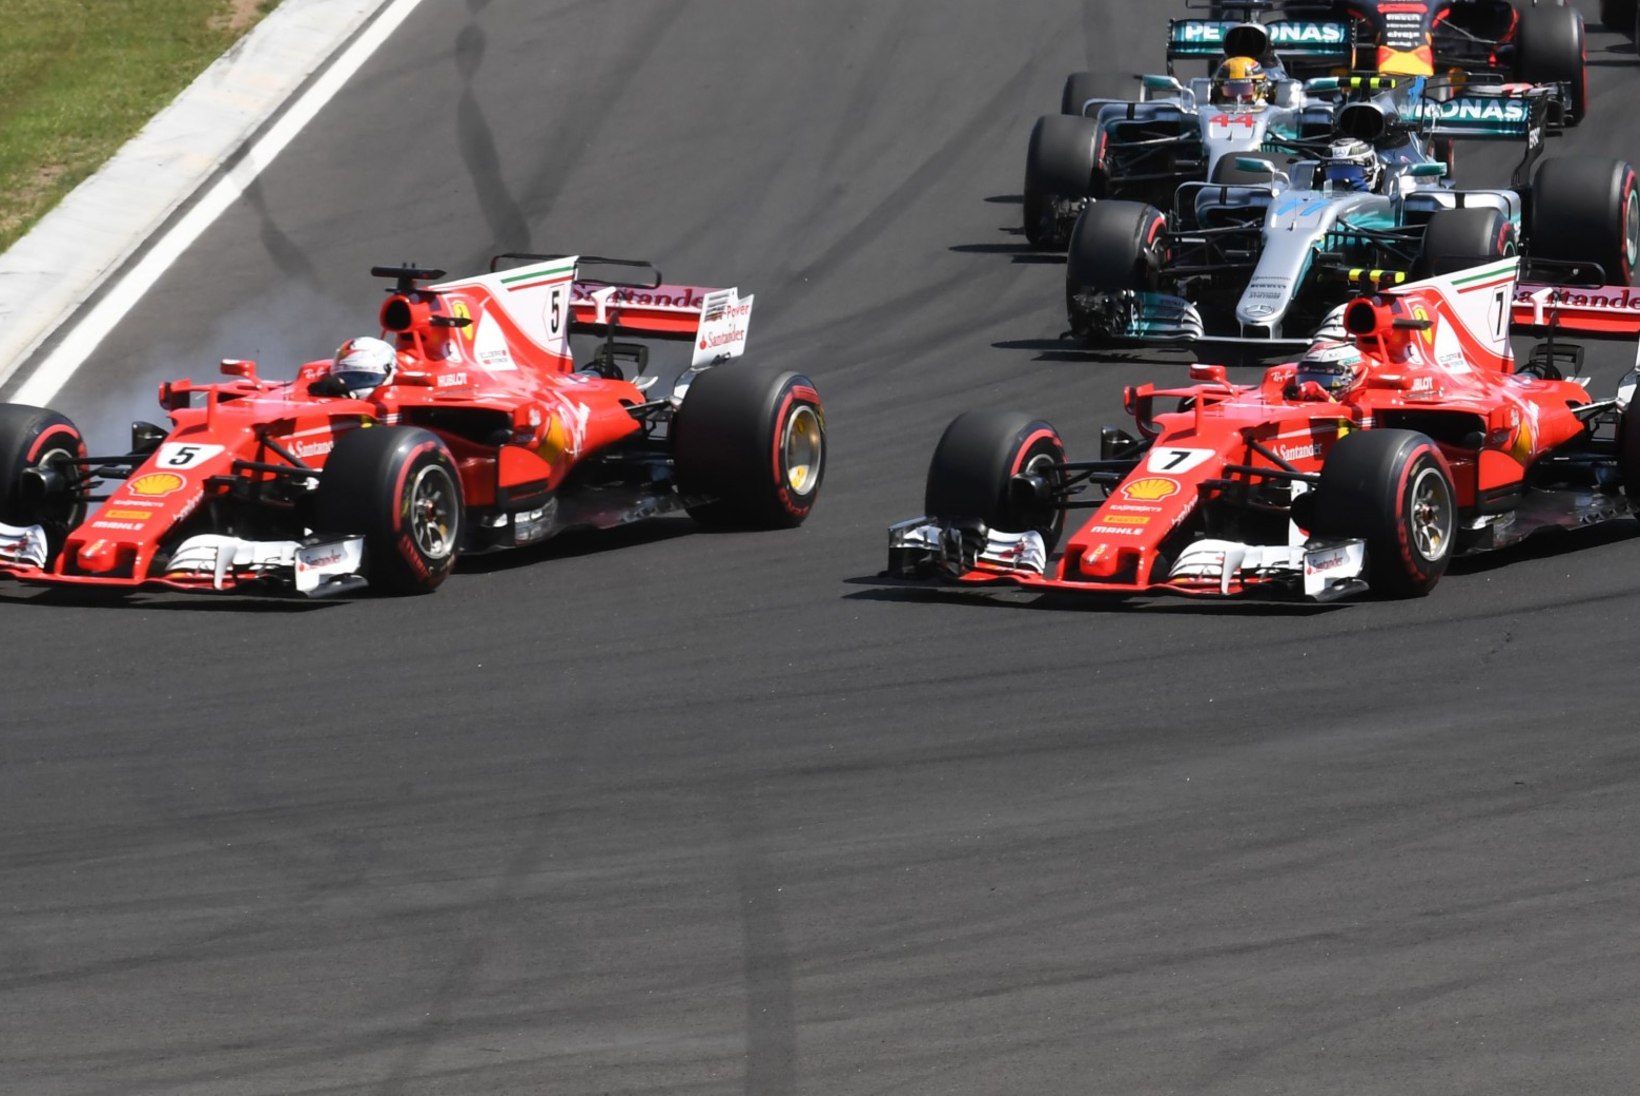 Ungaris esimestena rajale saanud Ferrarid veeresid samas järjekorras ka üle finišijoone